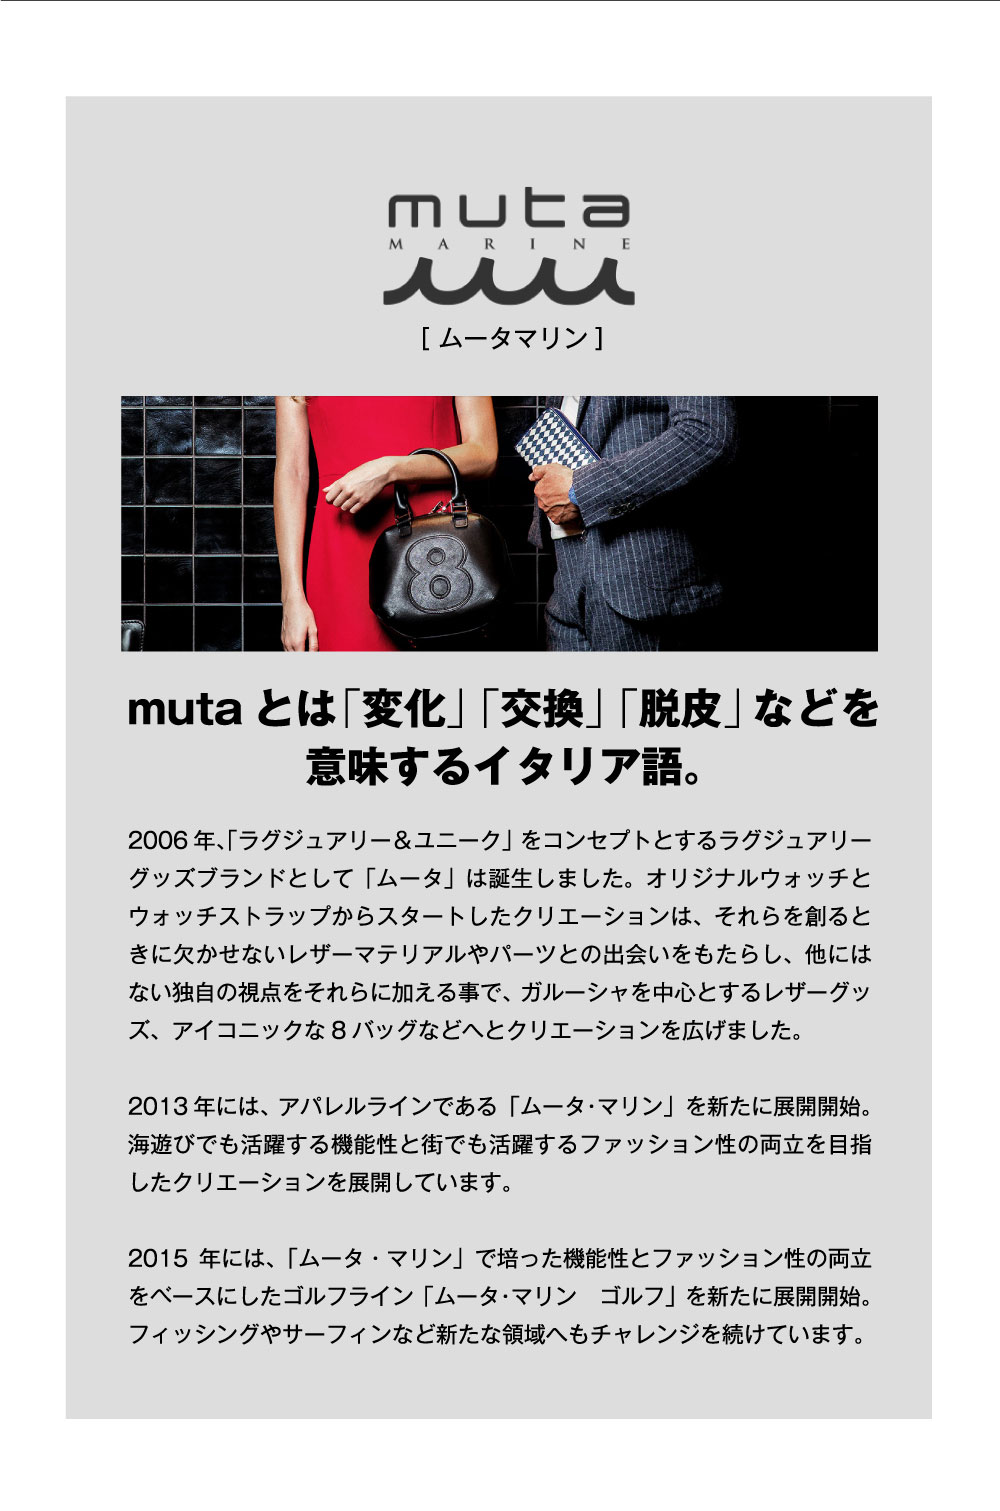 muta［ムータマリン] mutaとは「変化」「交換」「脱皮」などを意味するイタリア語。